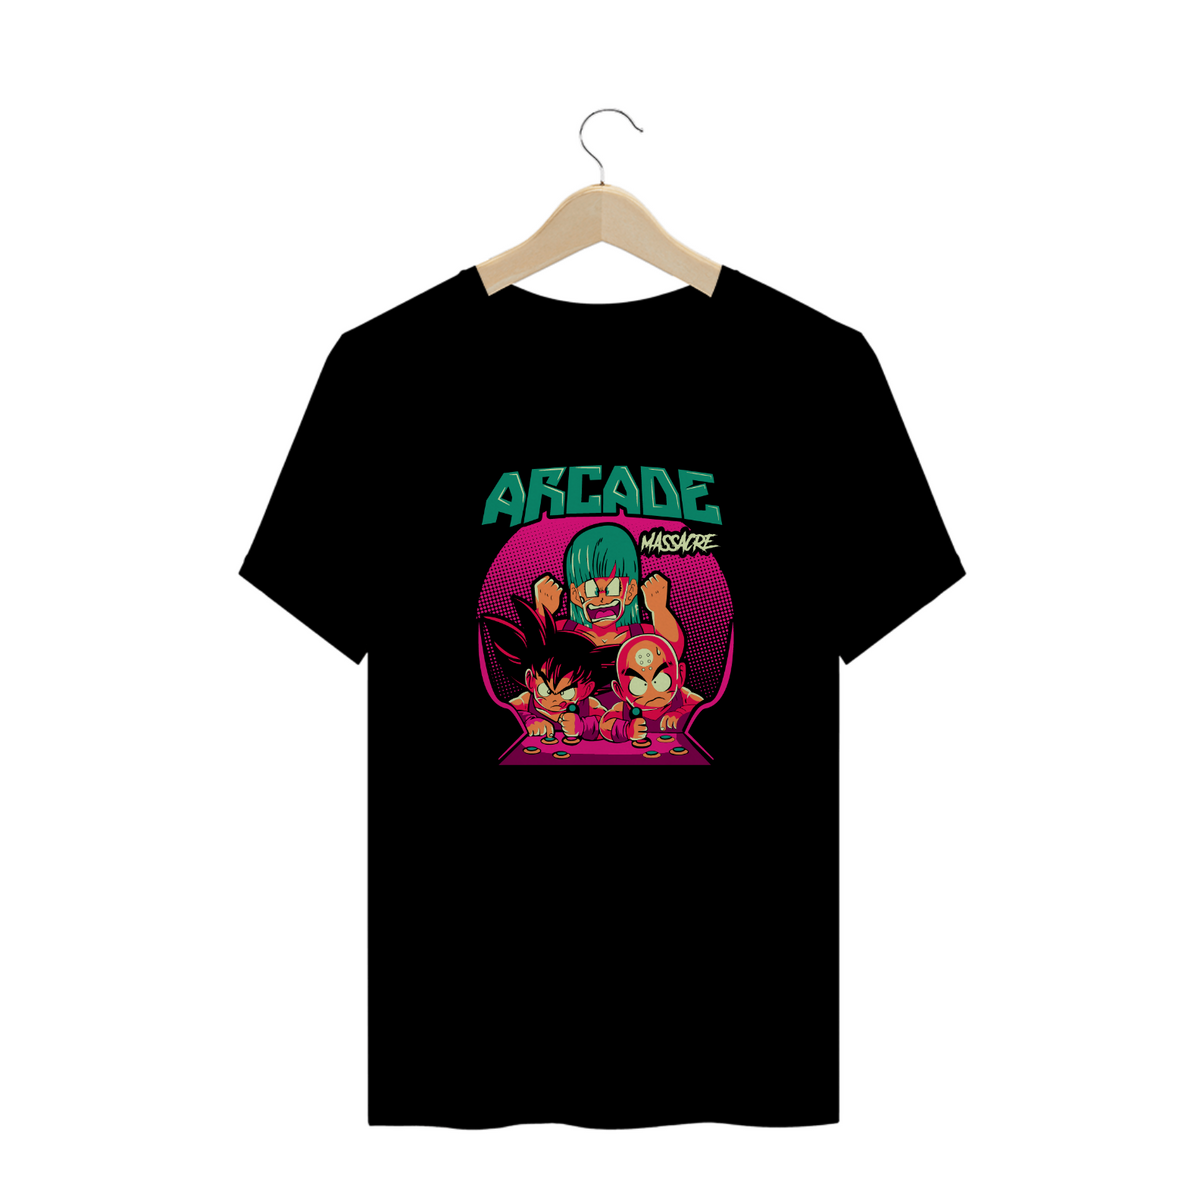 Nome do produto: Camisa DBZ Arcade